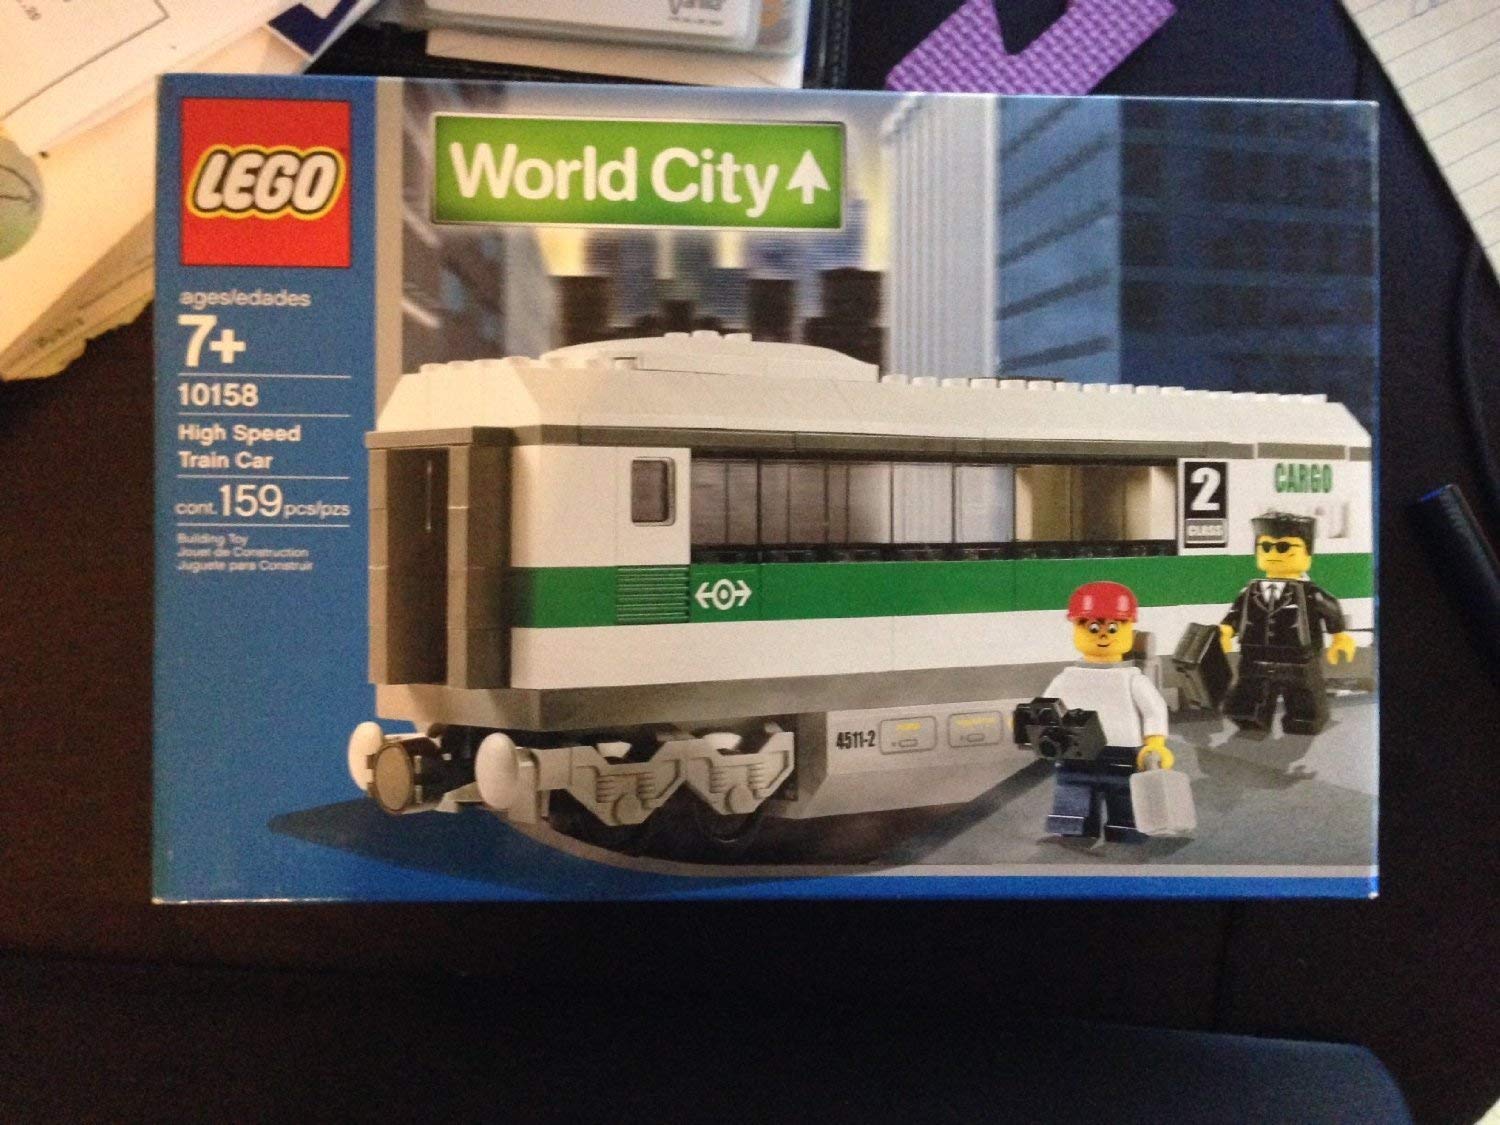 Lego 10158 High Speed Train Car By Lego